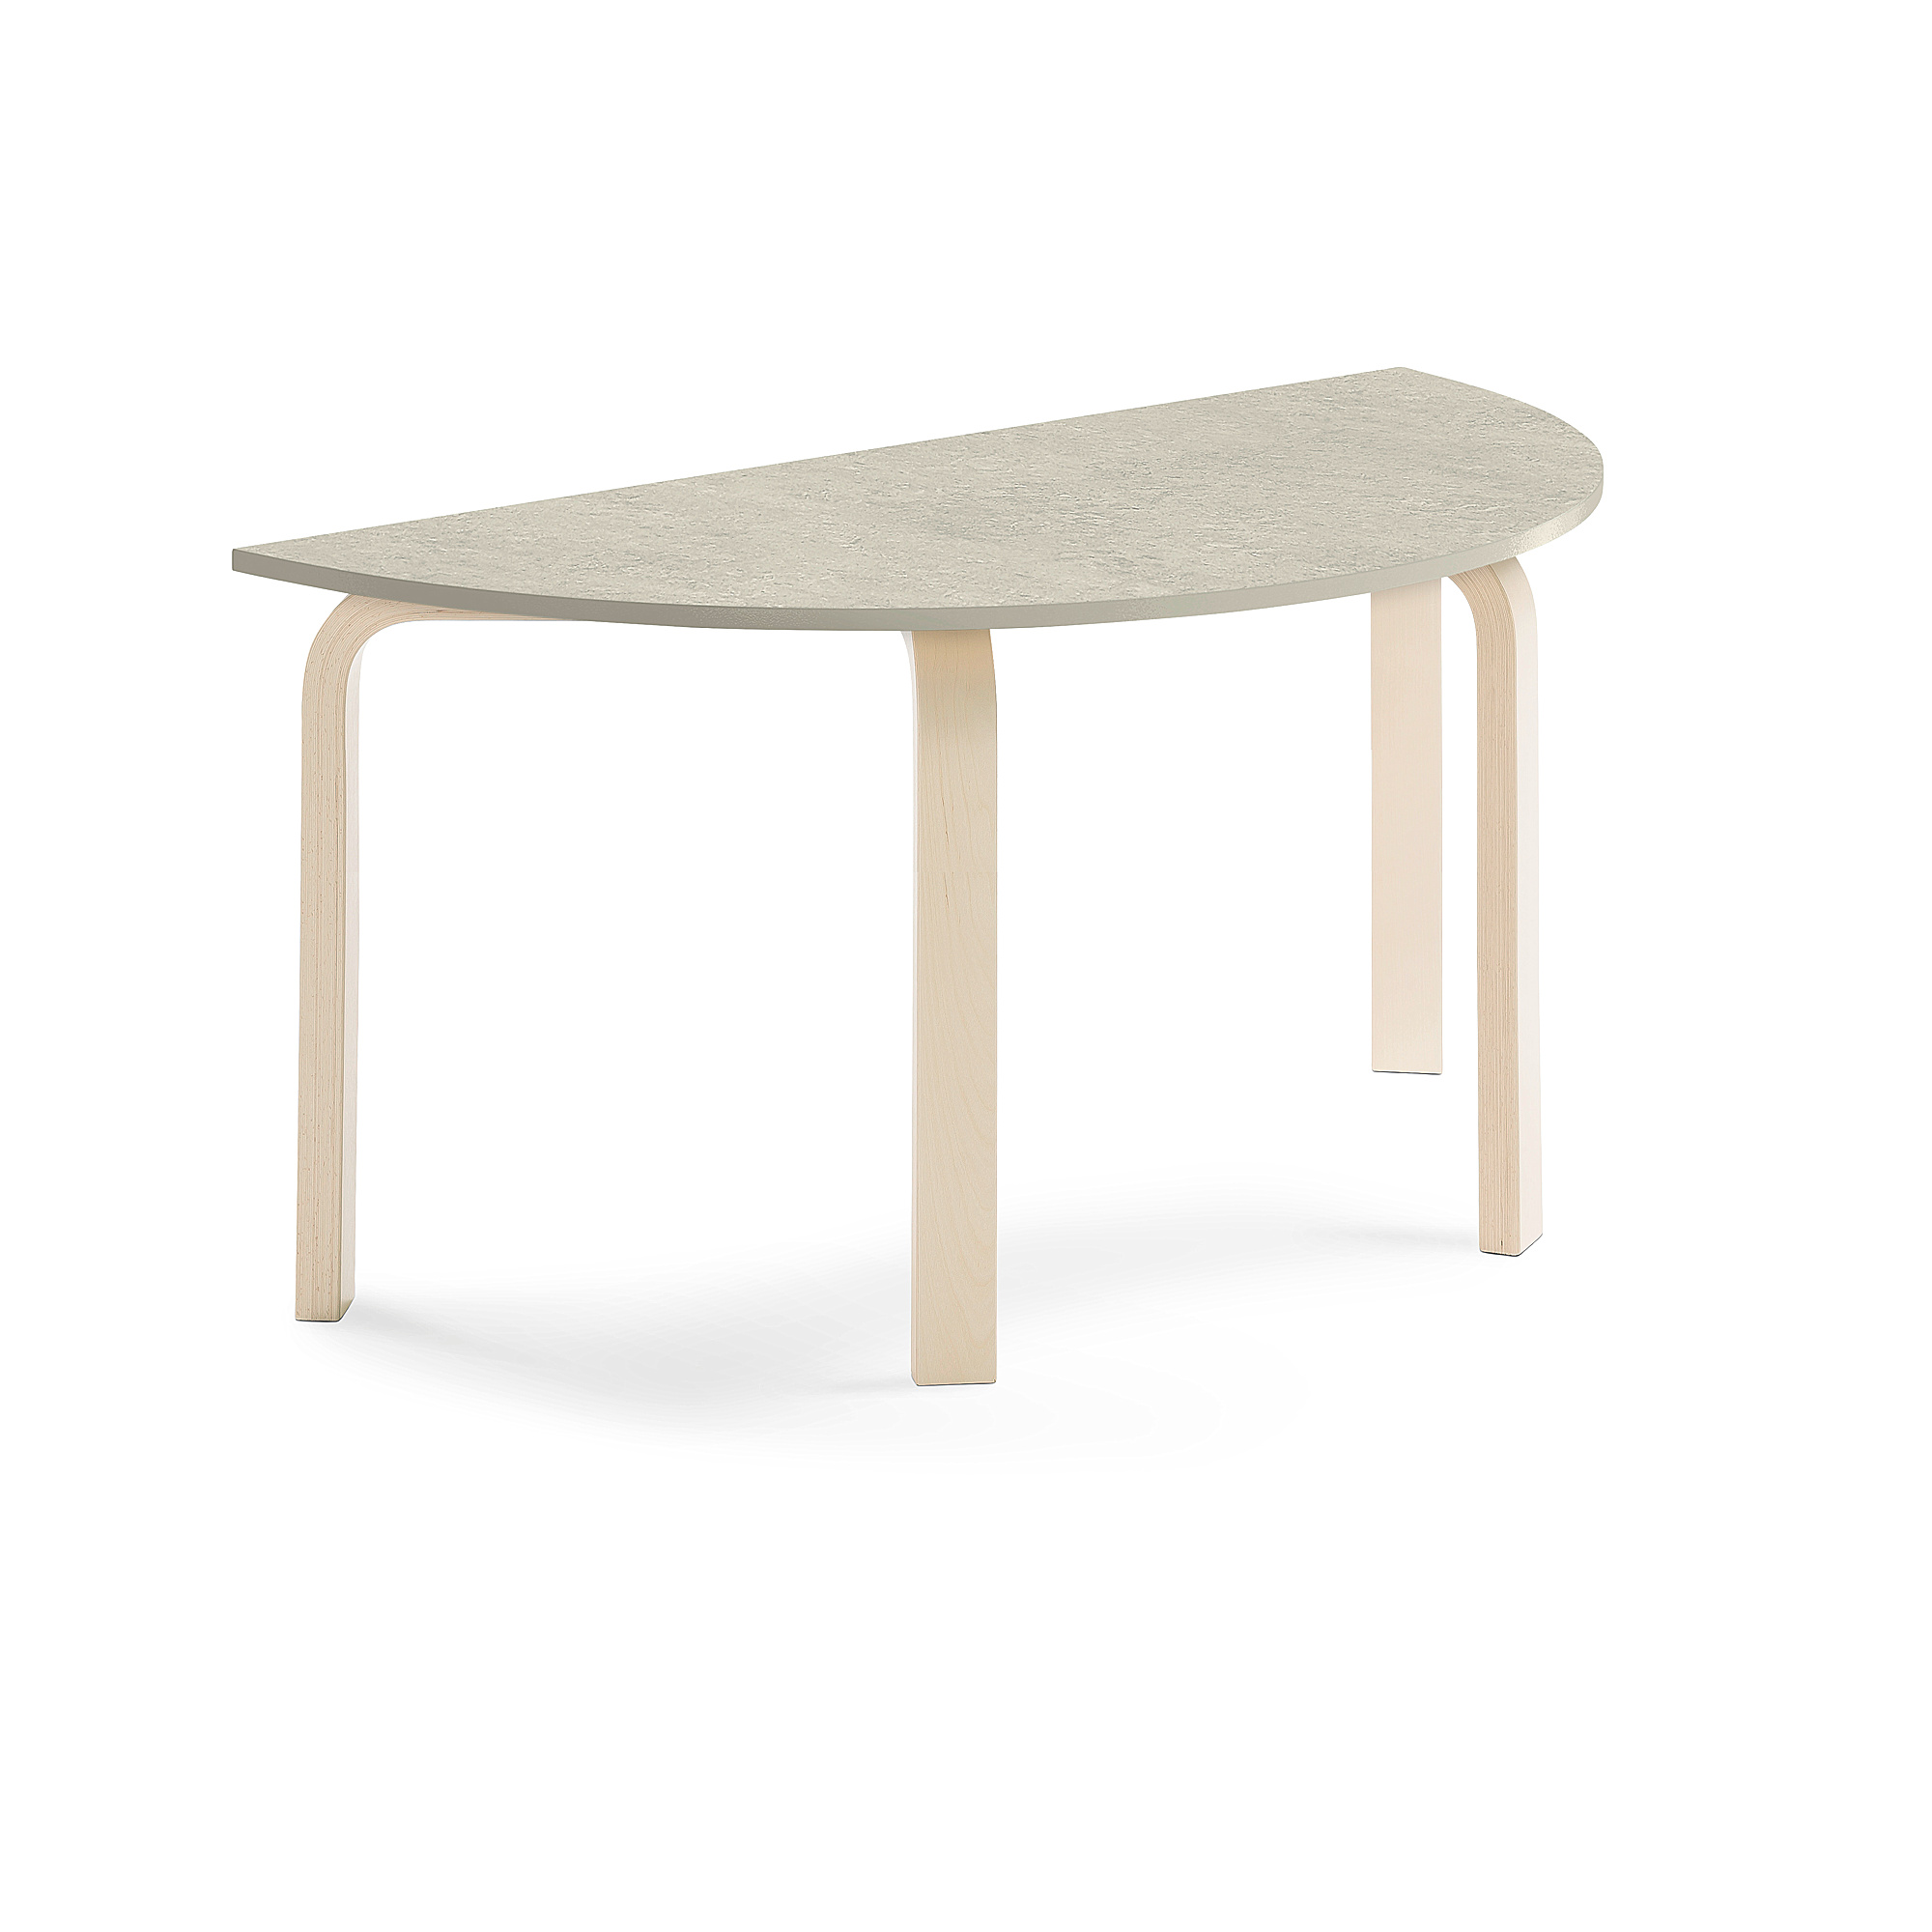 Stůl ELTON, půlkruh, 1200x600x590 mm, bříza, akustické linoleum, šedá